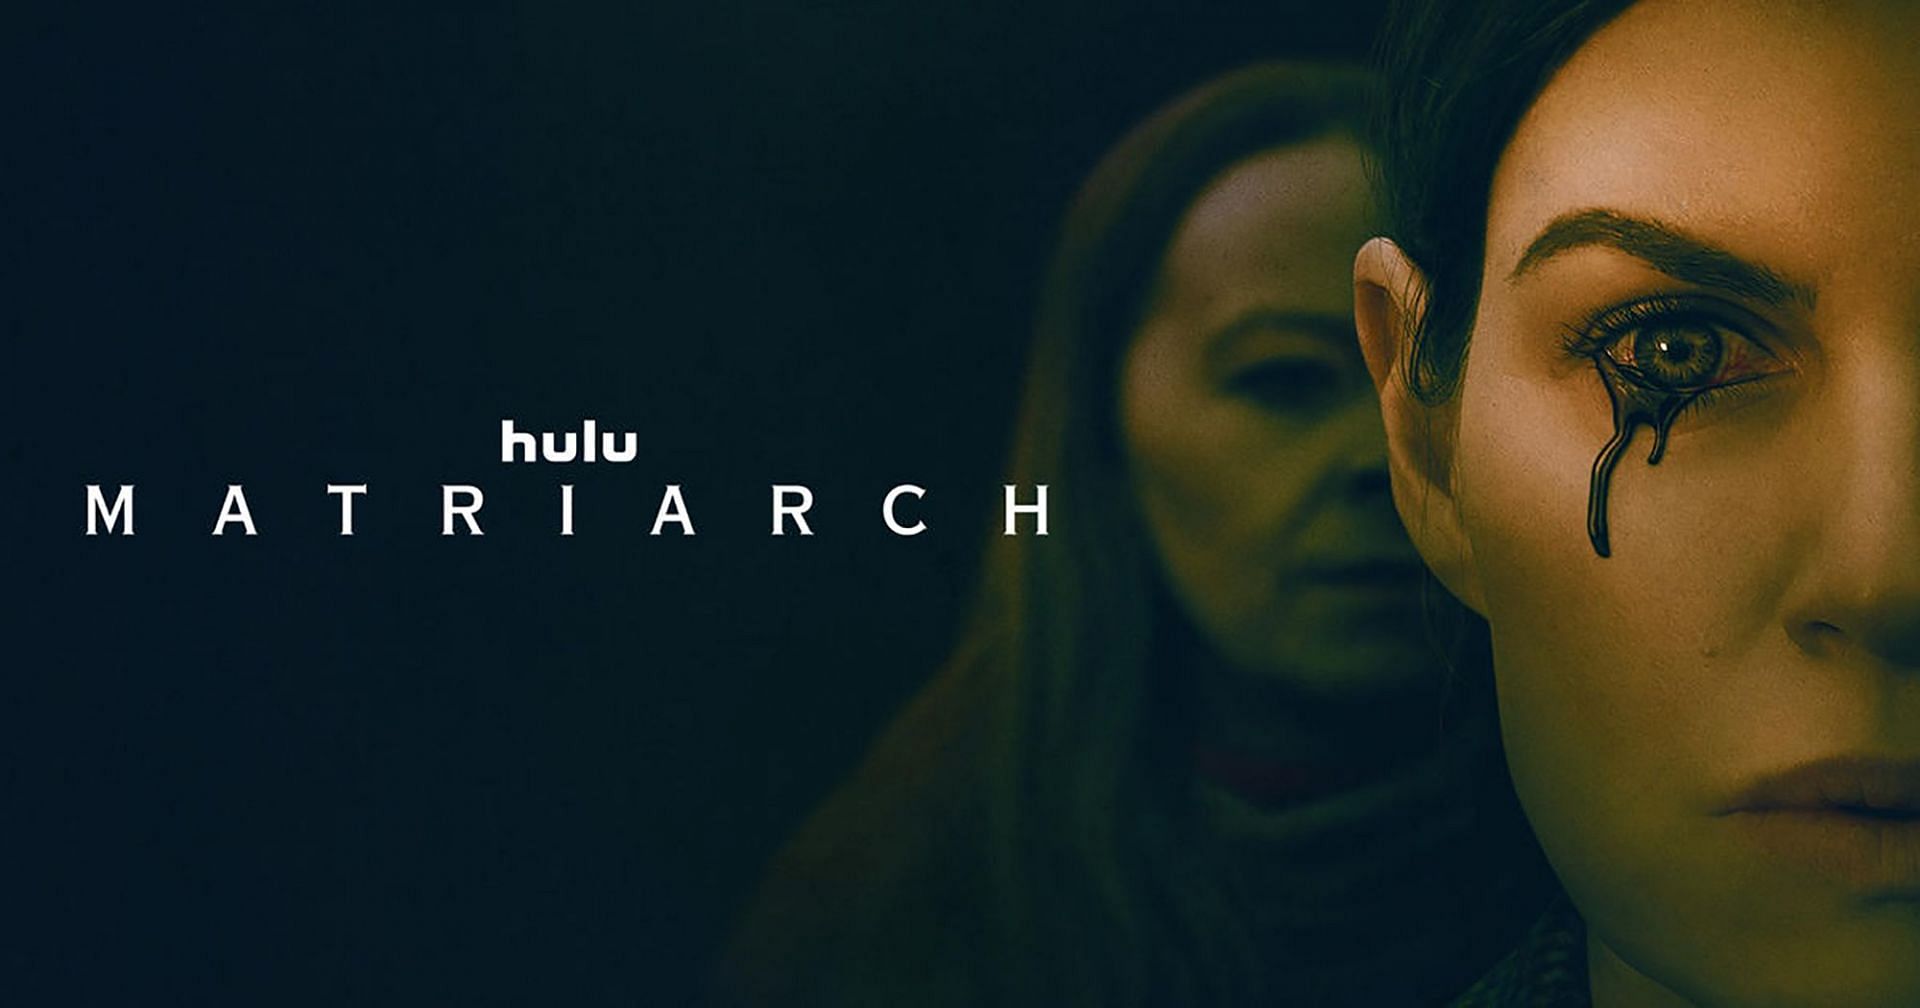 Matriarch (Image via Hulu)